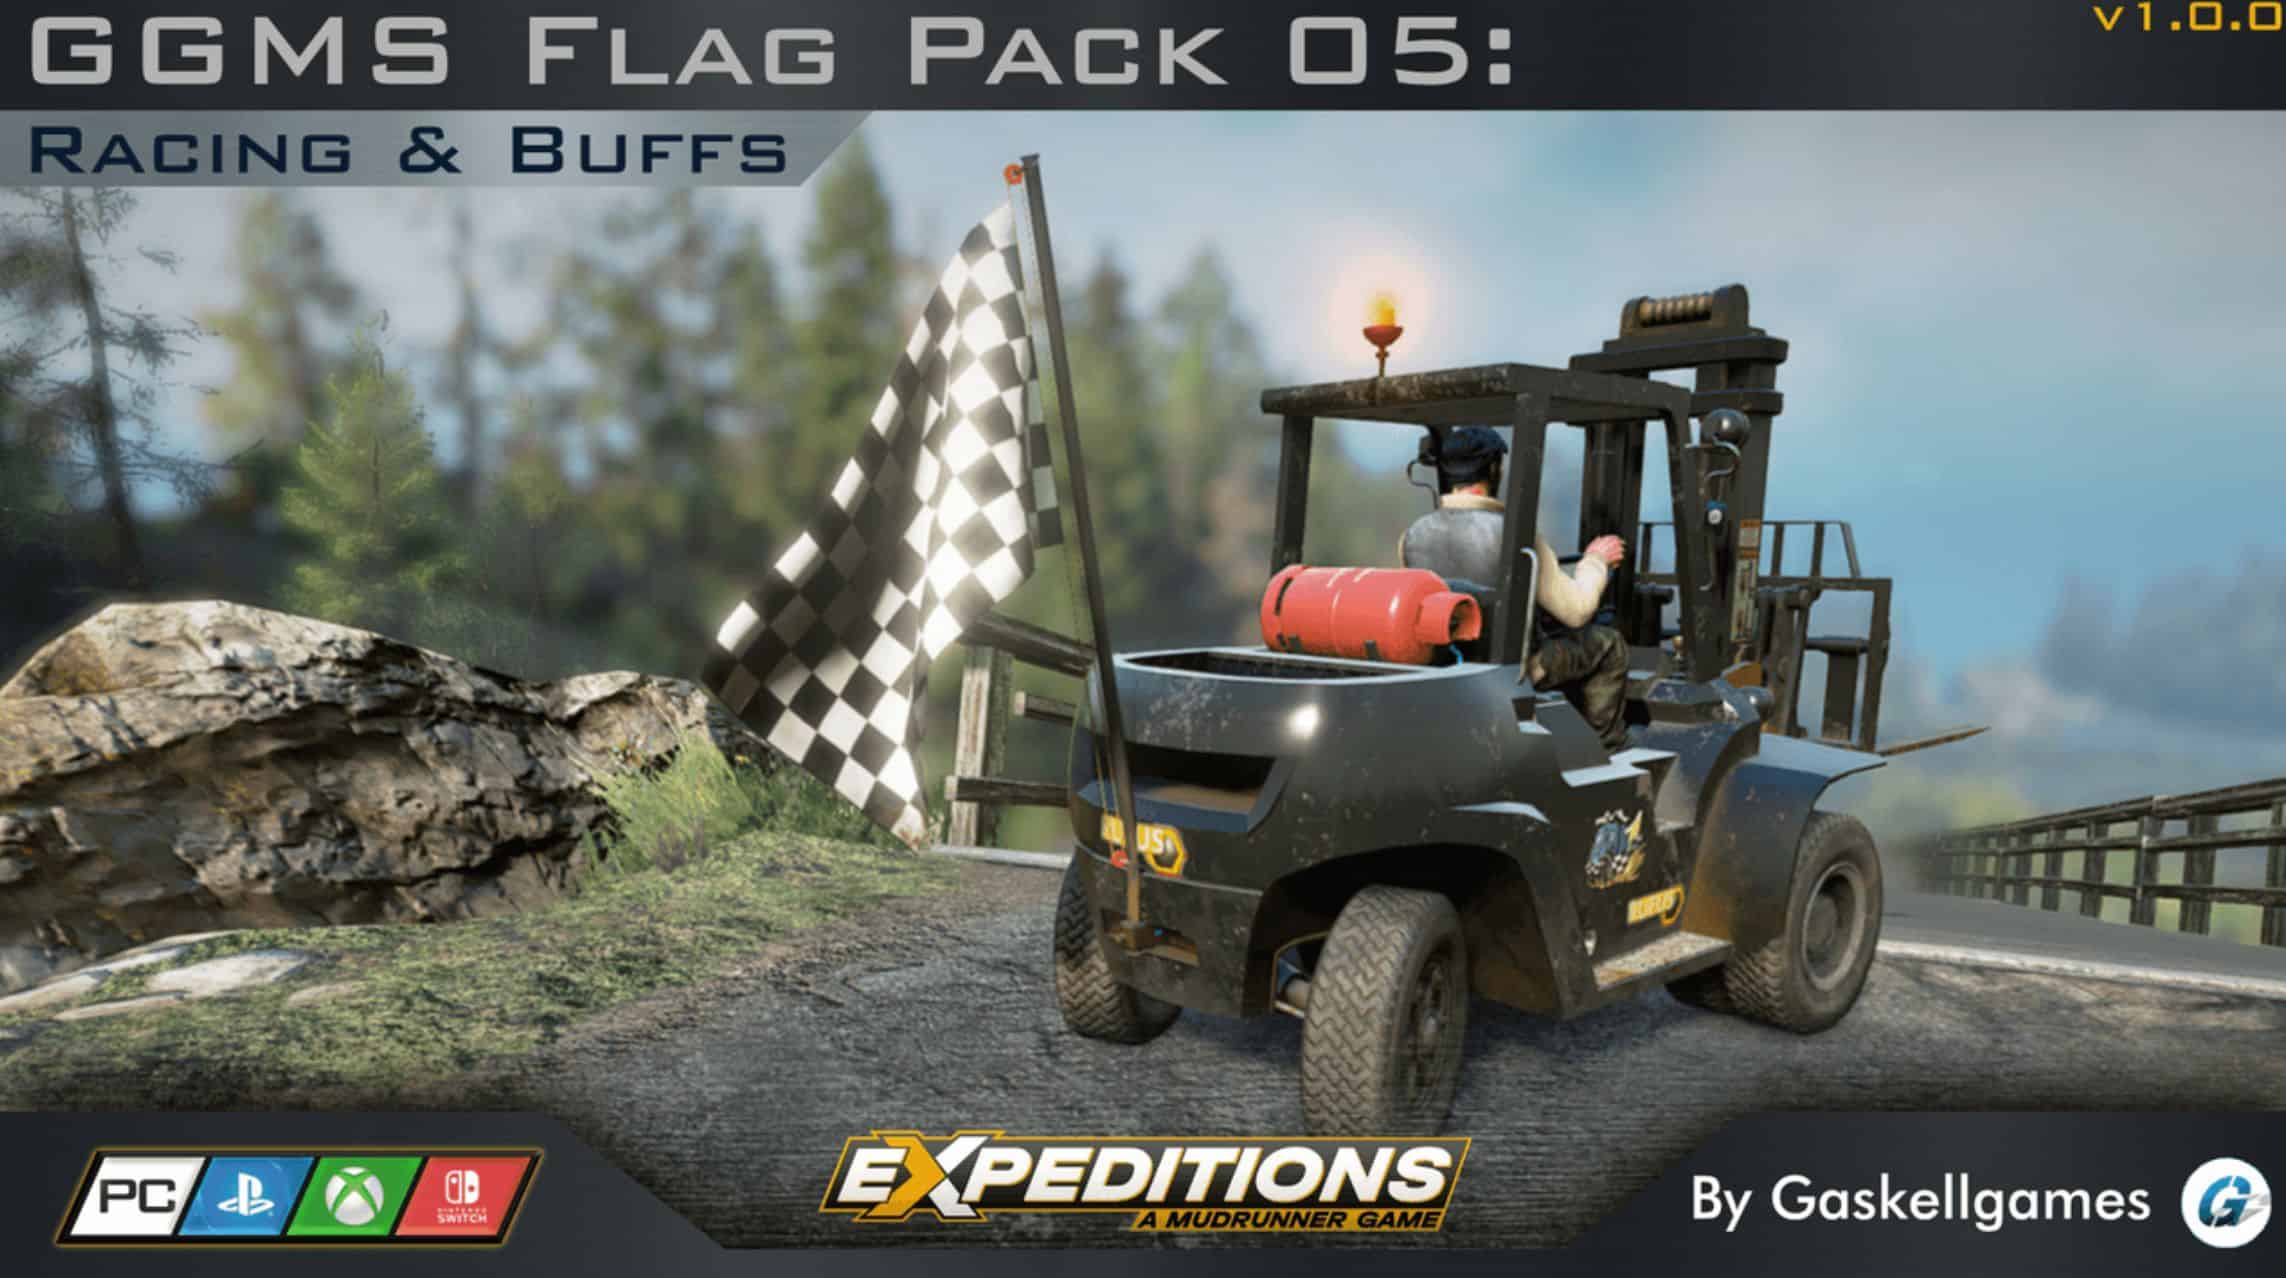 GGMS Flag Pack 05: Racing Buffs V1.0